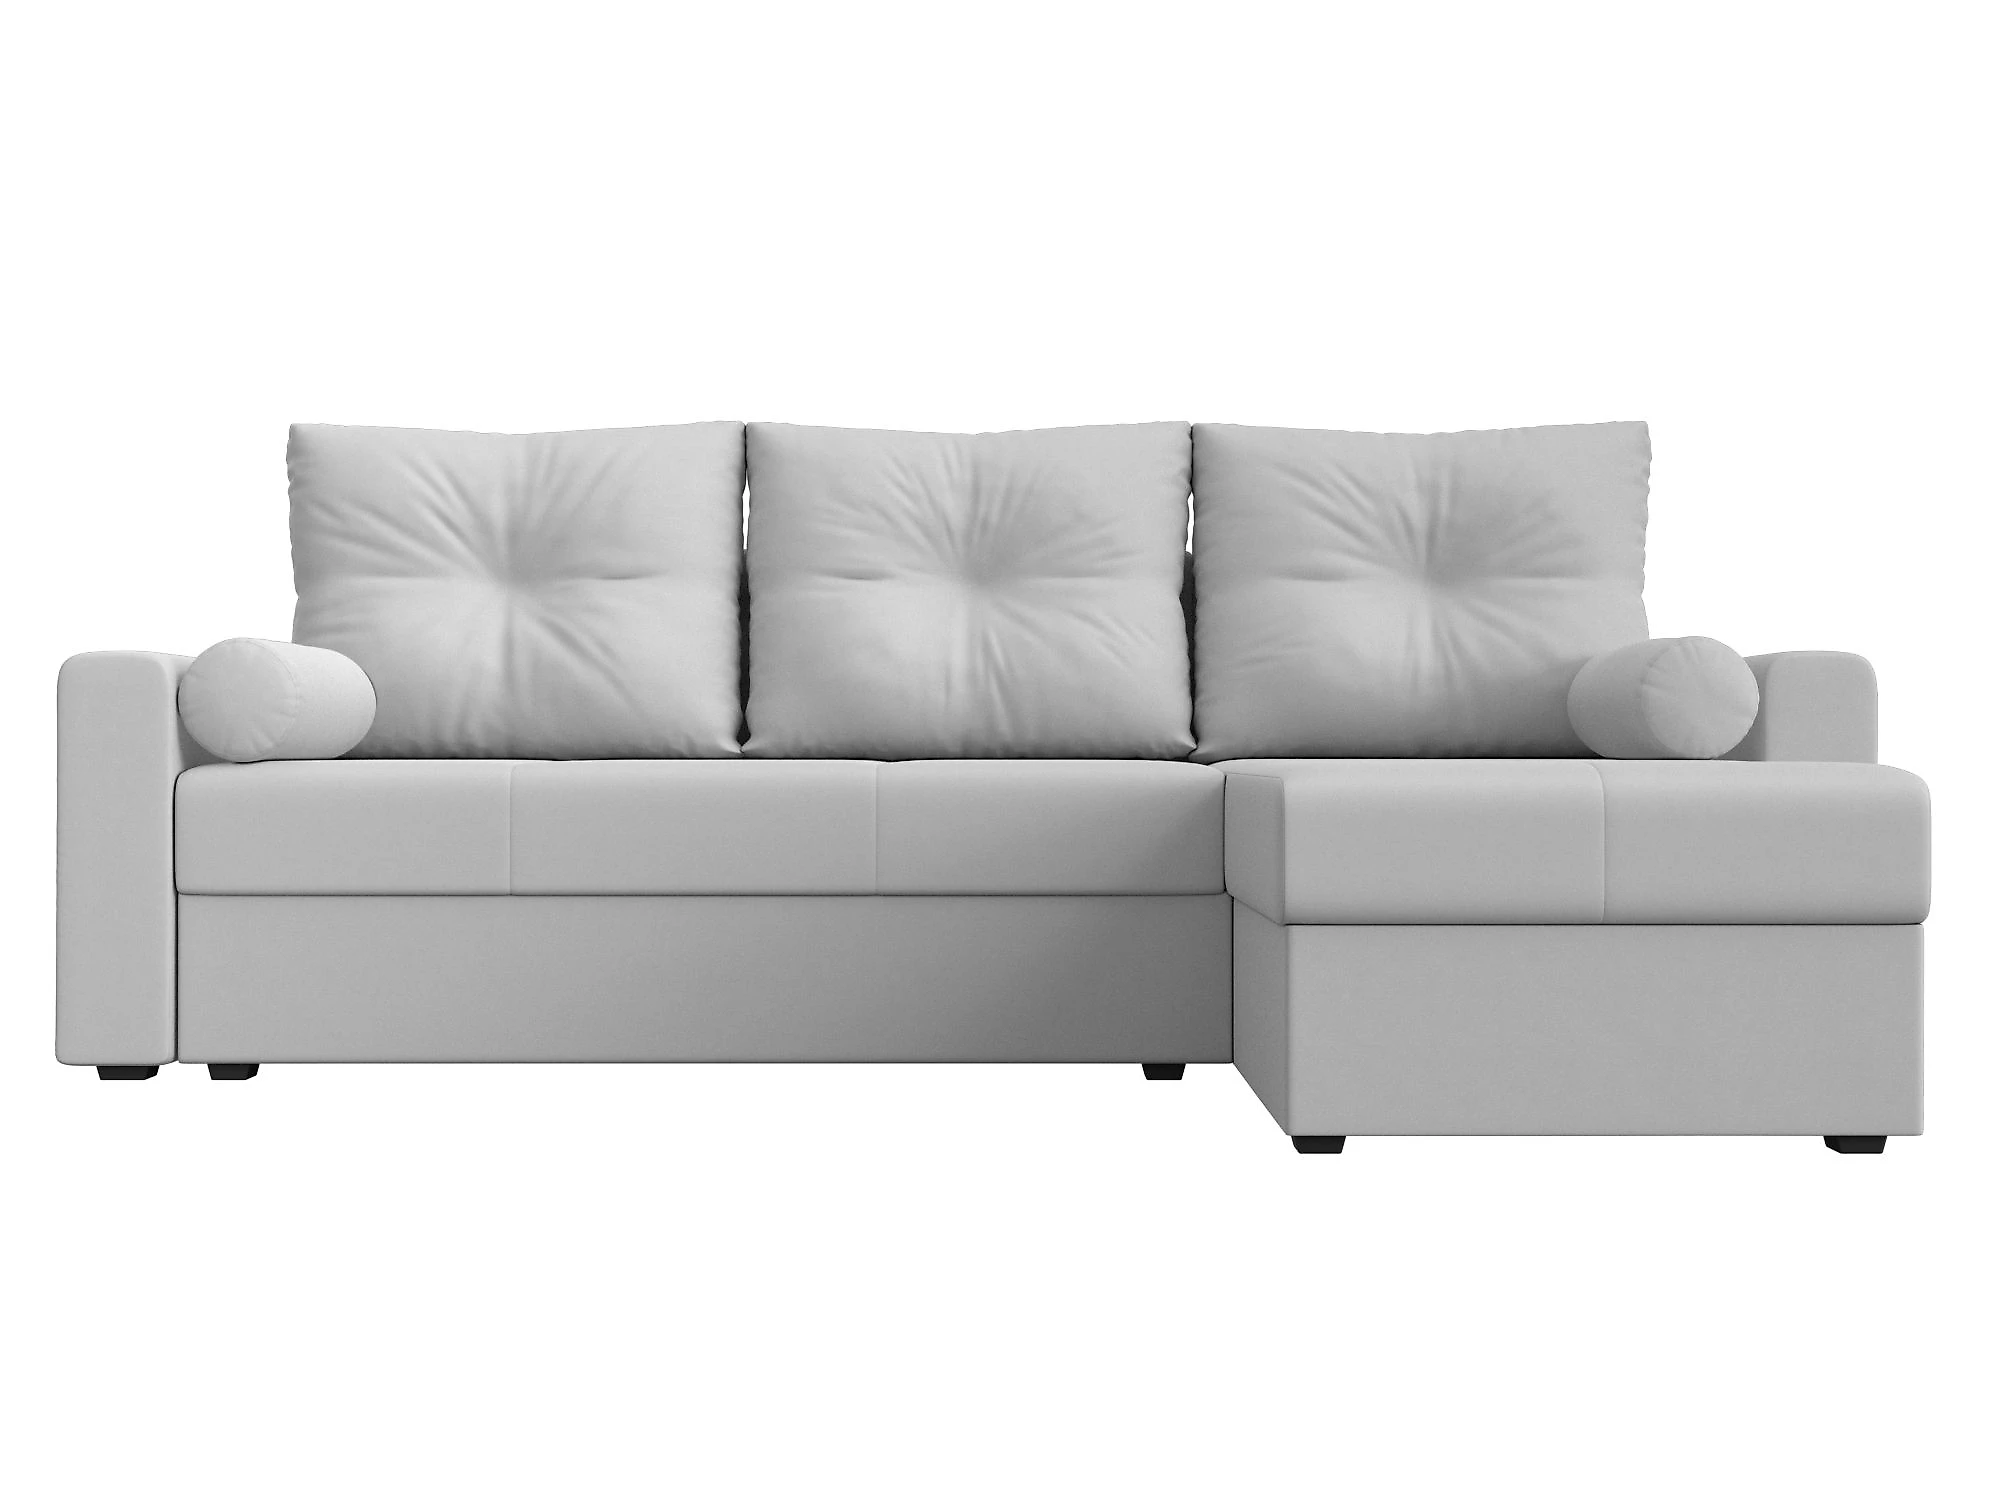  кожаный диван еврокнижка Верона Лайт Дизайн 13